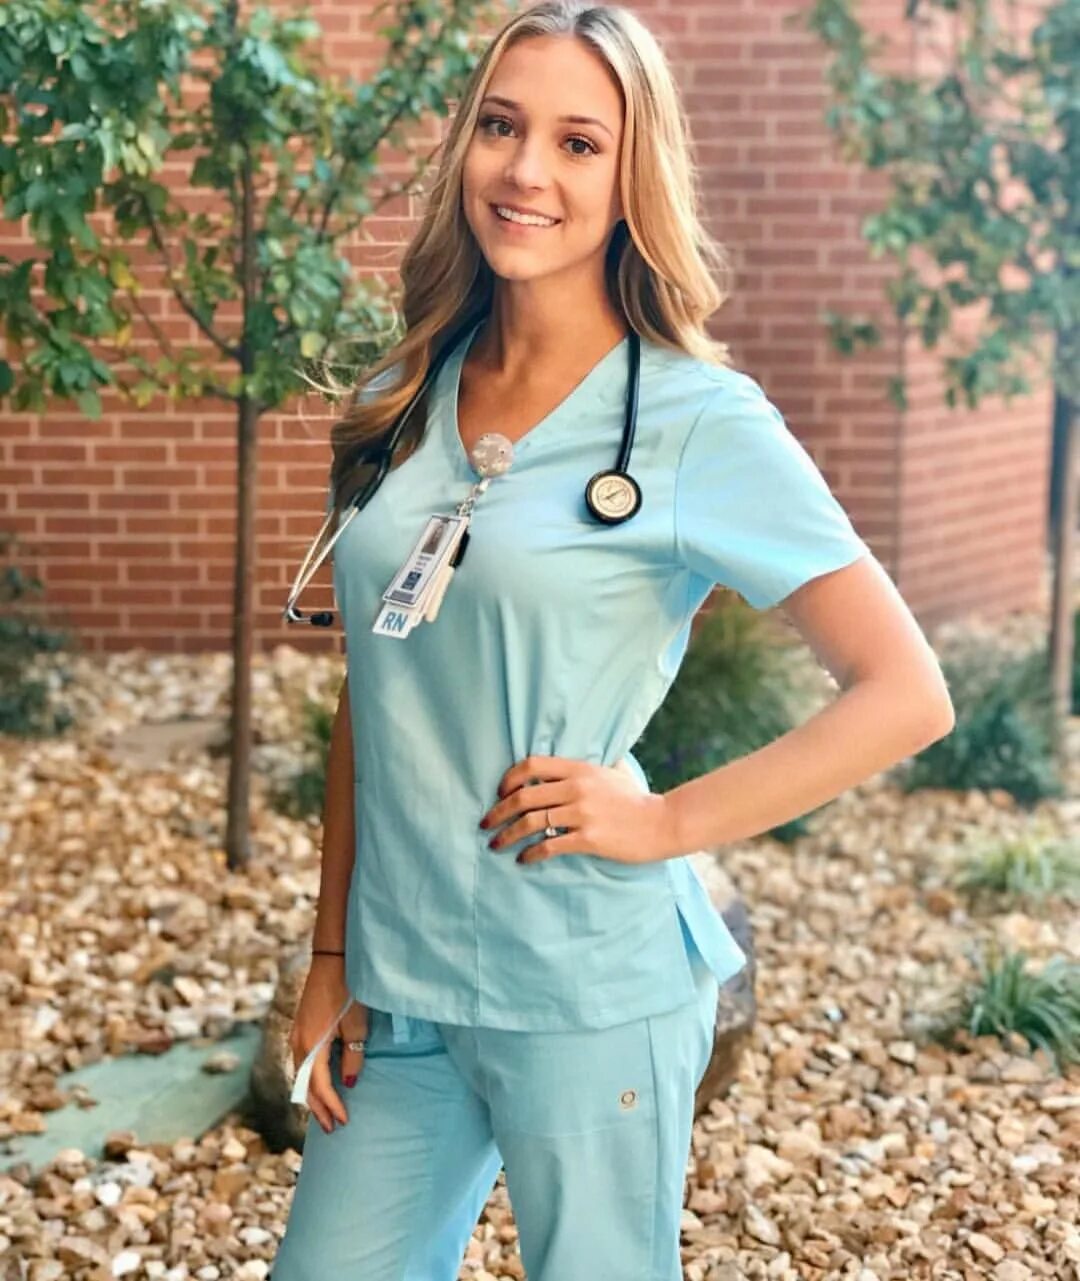 Симпатичные медсестры. Девушка в медицинской форме. Красивая девушка в мед форме. Красивые медсестры медицинская форма. Девушка медик.